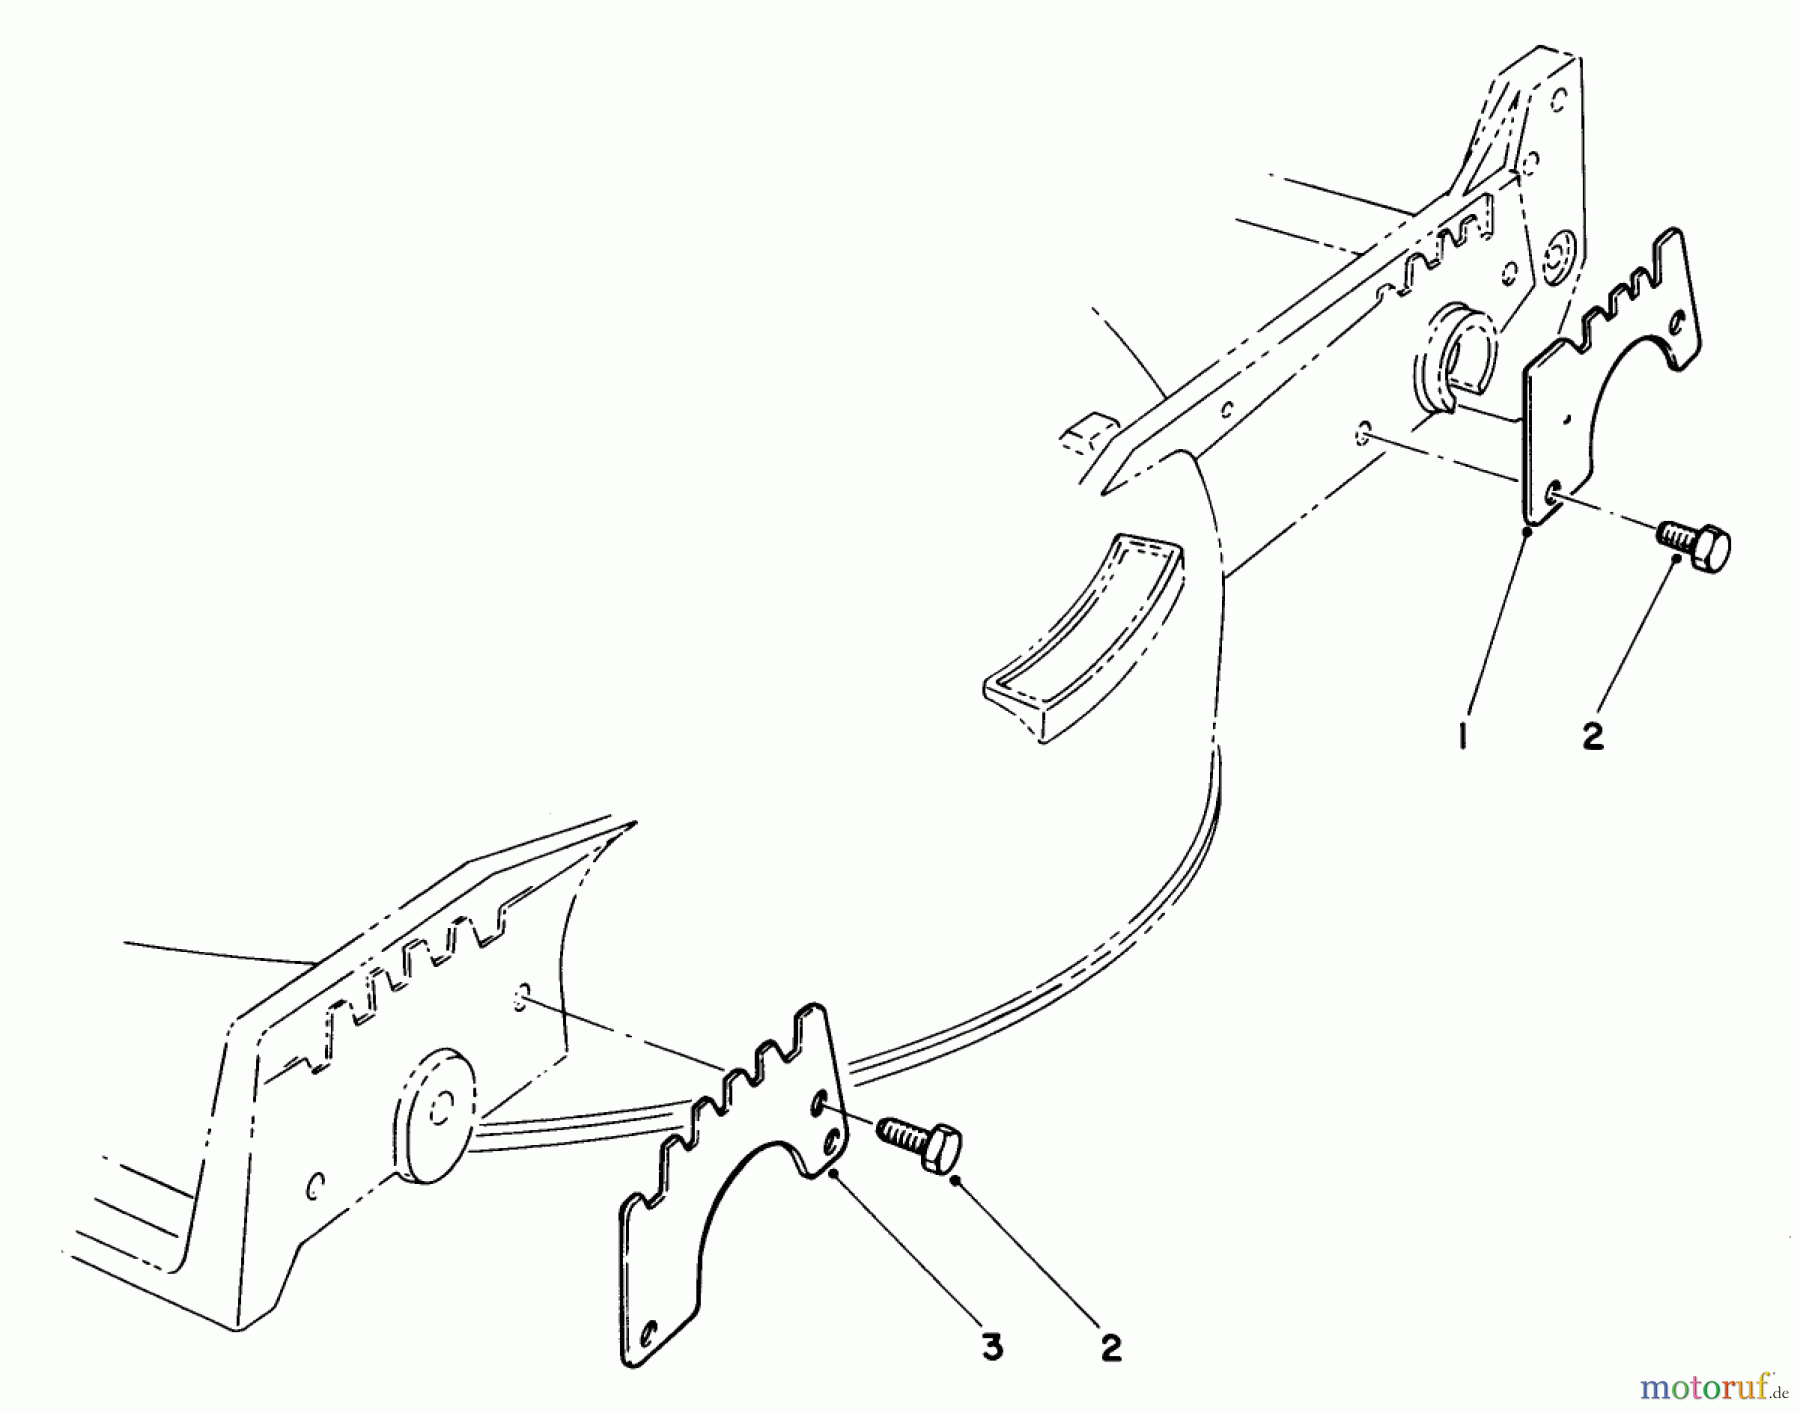  Toro Neu Mowers, Walk-Behind Seite 1 20715 - Toro Lawnmower, 1985 (5000001-5999999) WEAR PLATE KIT NO. 49-4080 (OPTIONAL)